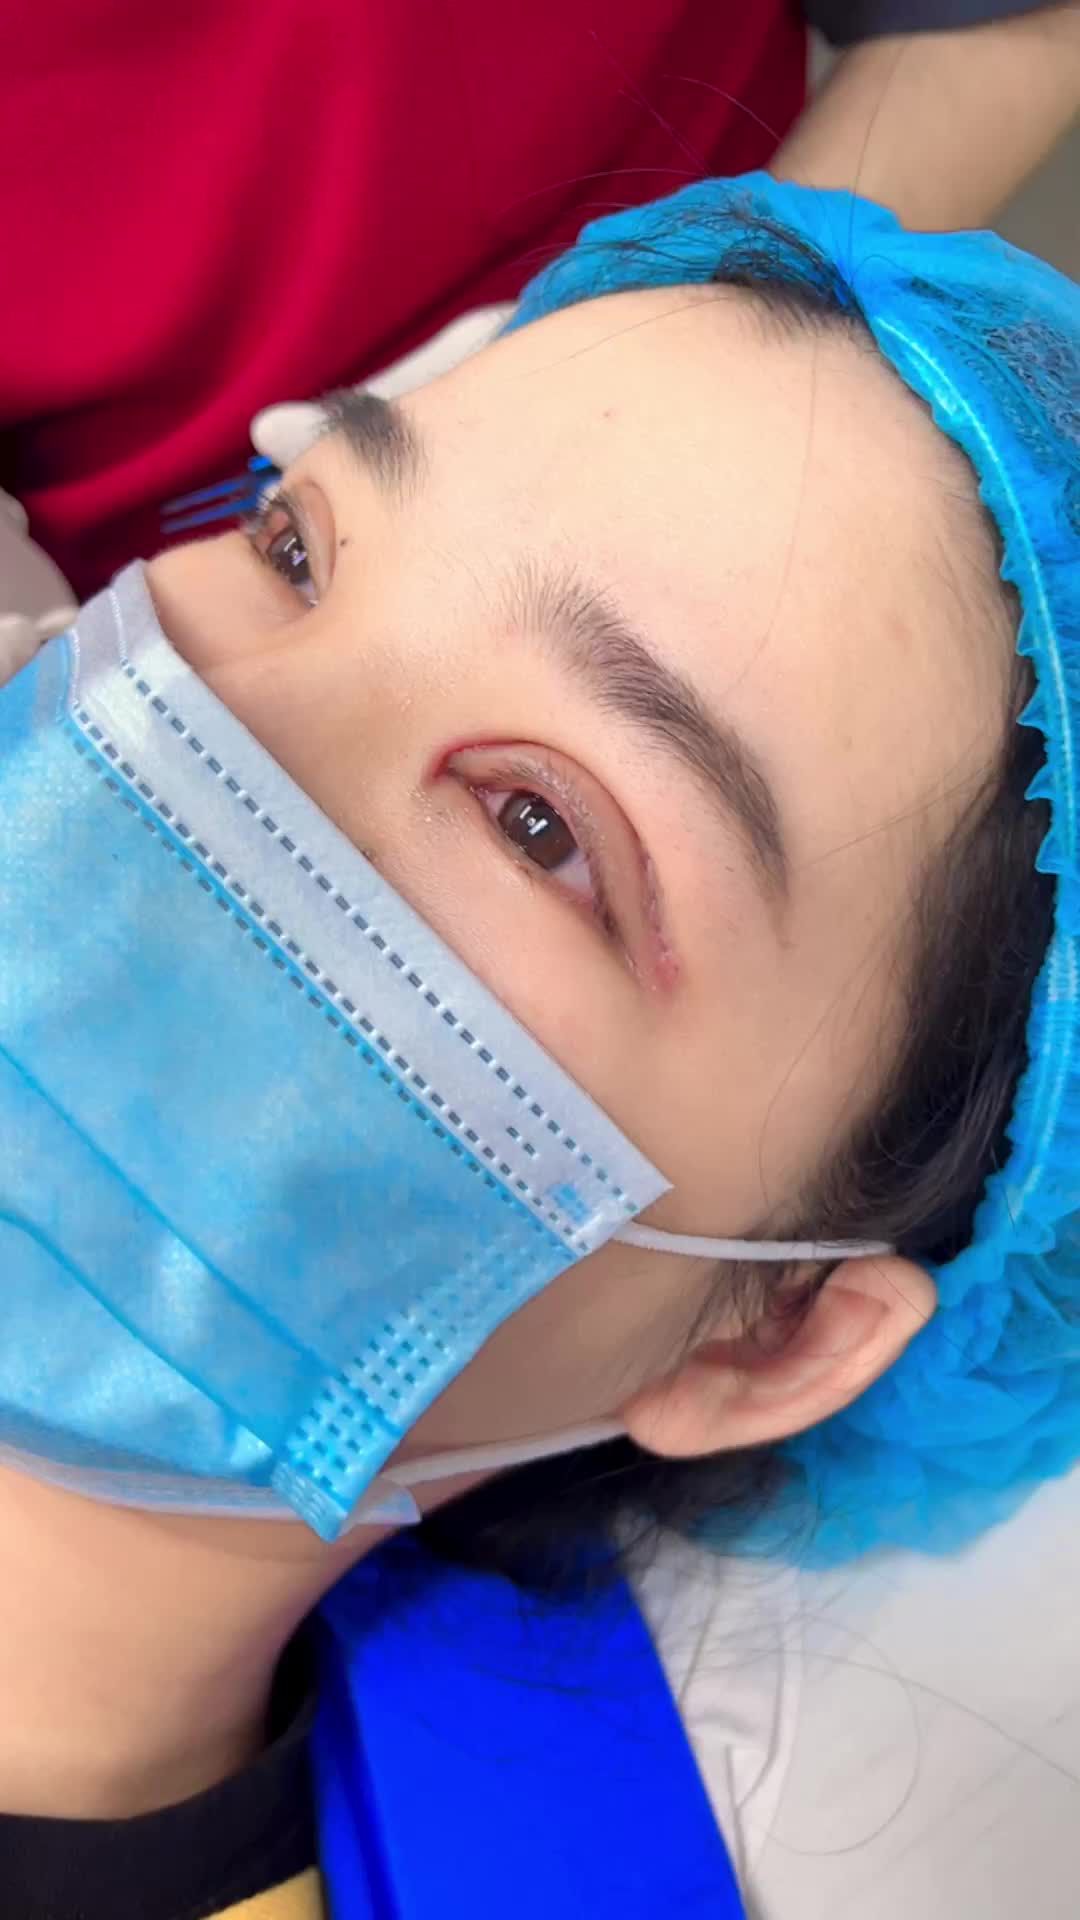 Kết quả cắt mí Plasma sau 5 ngày phẫu thuật tại Kanganm